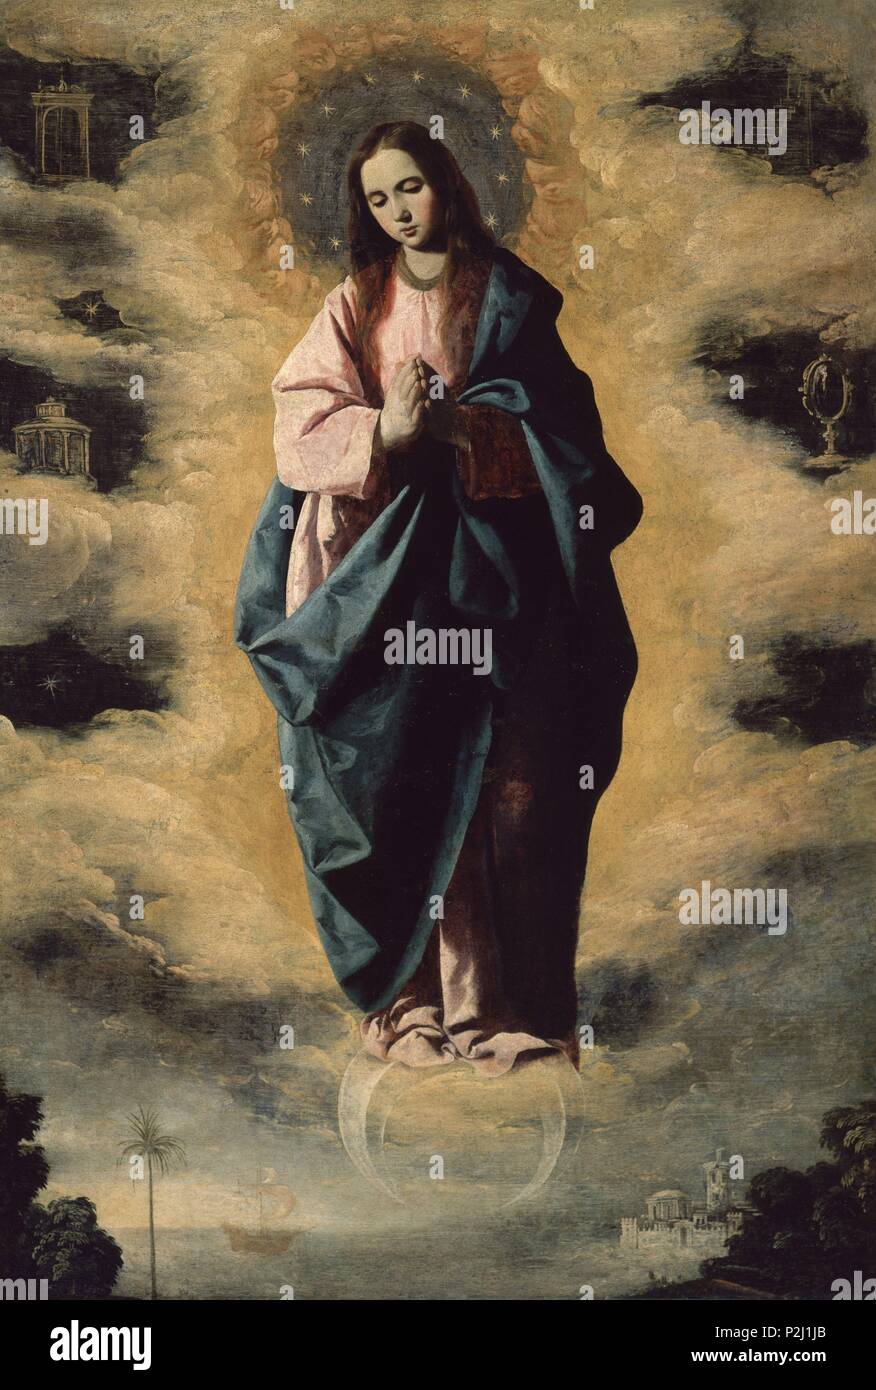 La Inmaculada Concepción", ca. 1630, el Barroco español, óleo sobre lienzo,  128 cm x 89 cm, P02992. Autor: Francisco de Zurbarán (c. 1598-1664).  Ubicación: MUSEO DEL PRADO-PINTURA, Madrid, España. También conocido como: